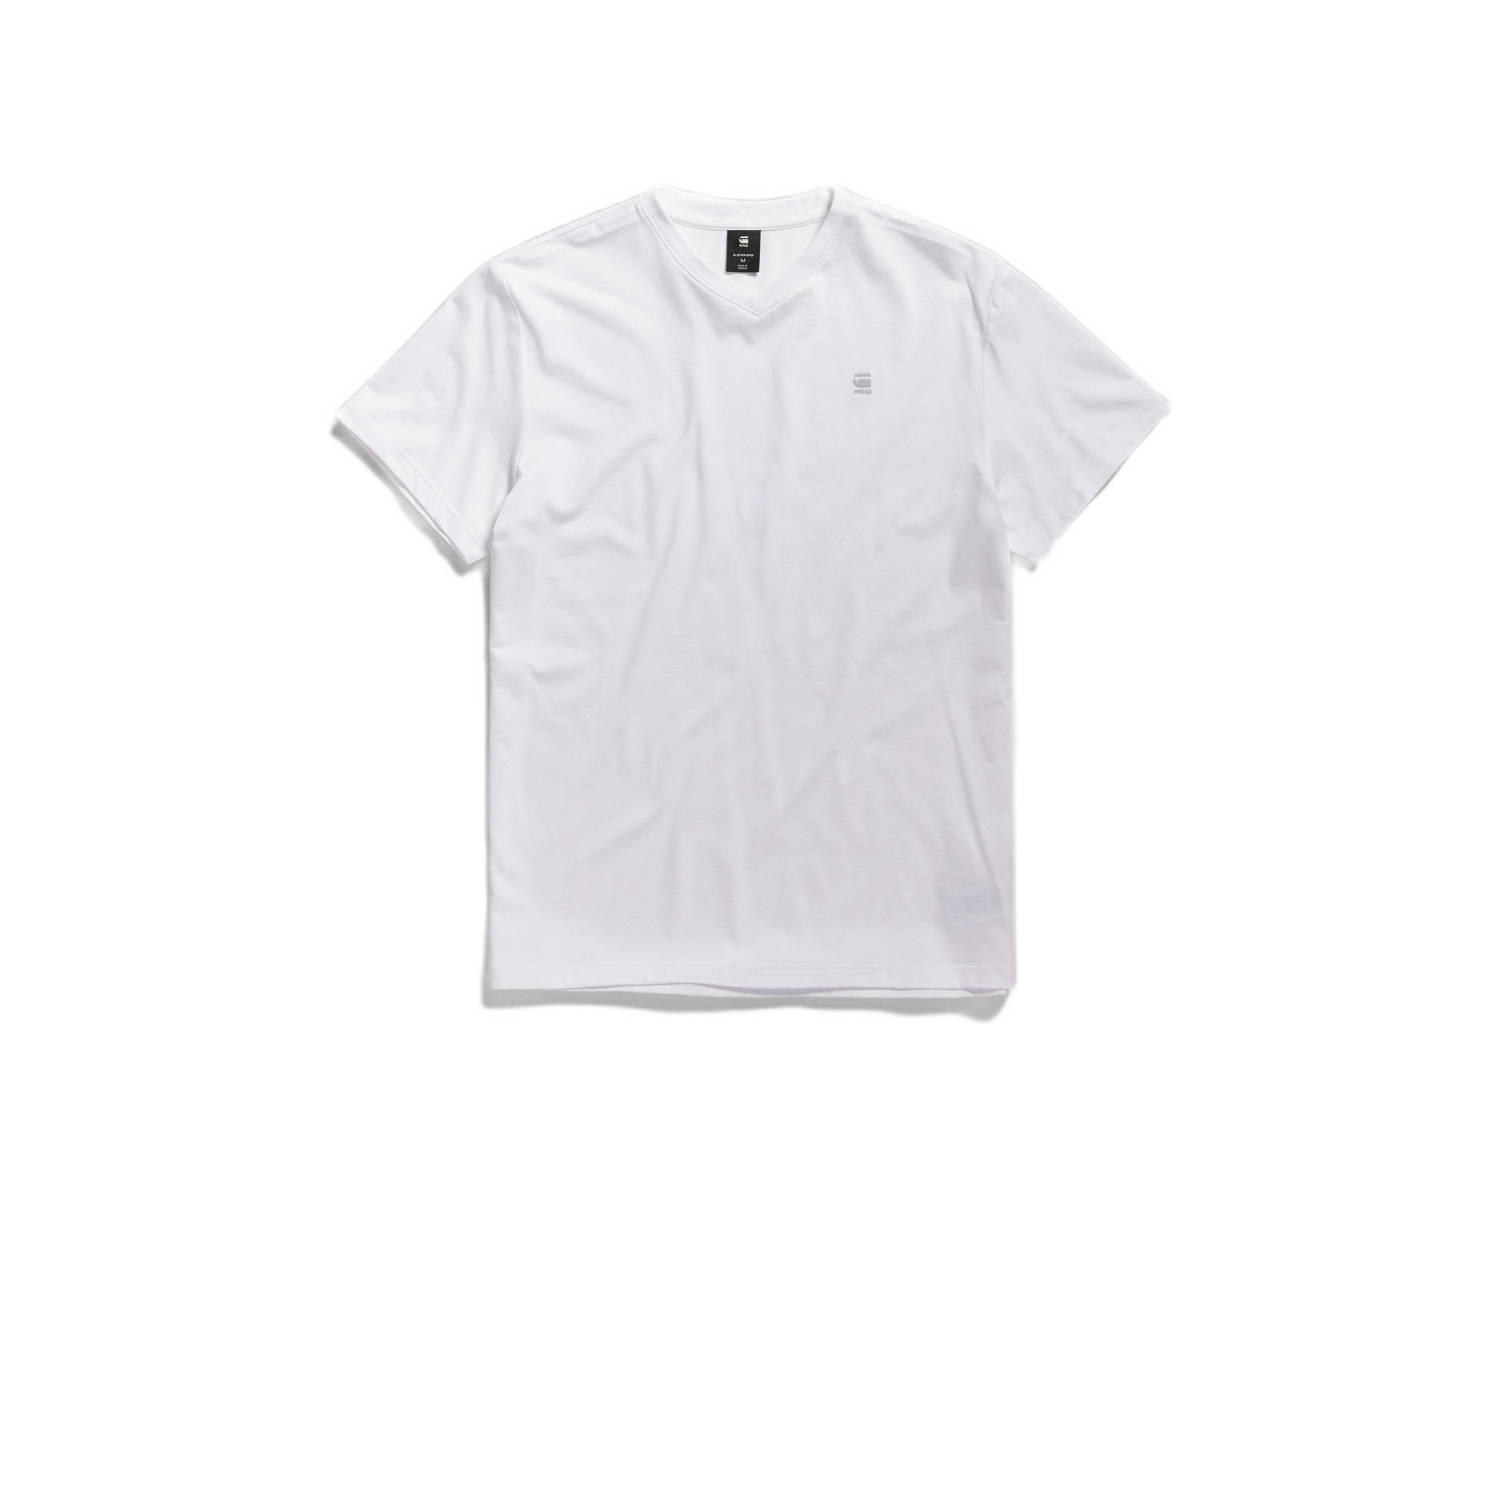 G-Star RAW T-shirt met logo wit